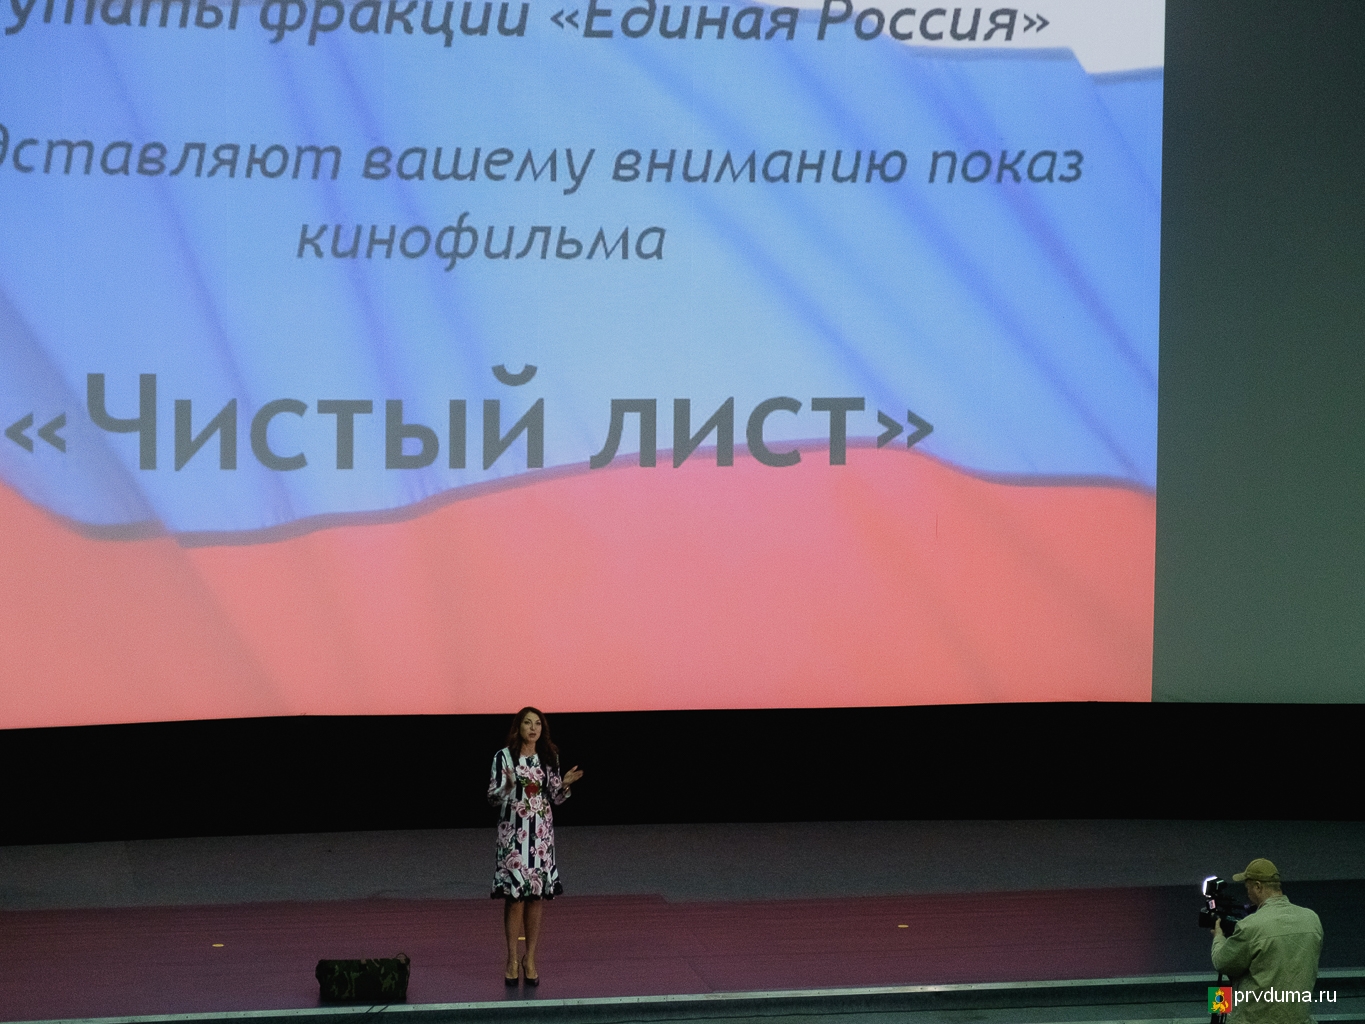 Наталья Воробьева: «До встречи на кинопоказах в следующем году!»